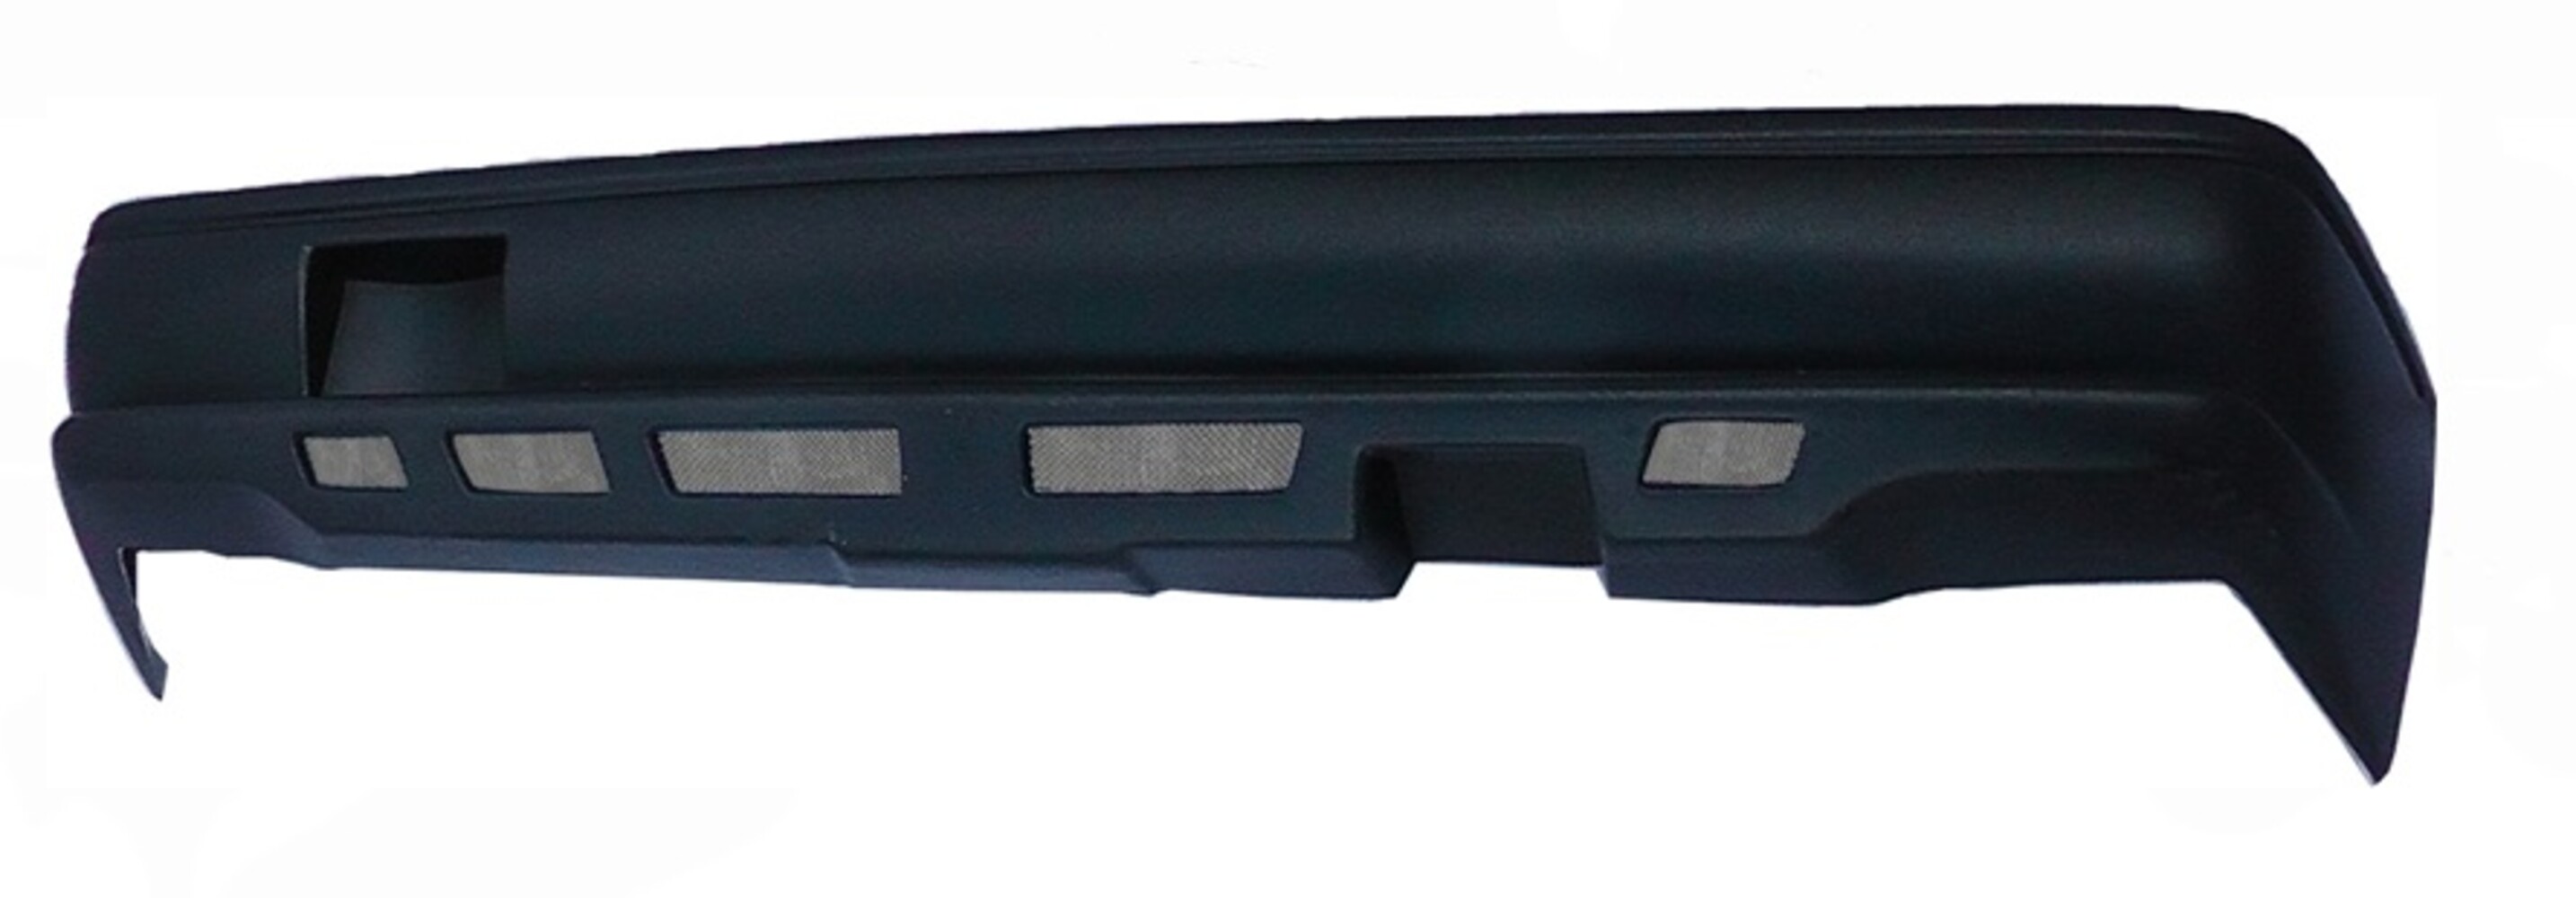 Задний бампер с сеткой для ВАЗ 2101, 2103, 2106 неокрашенный